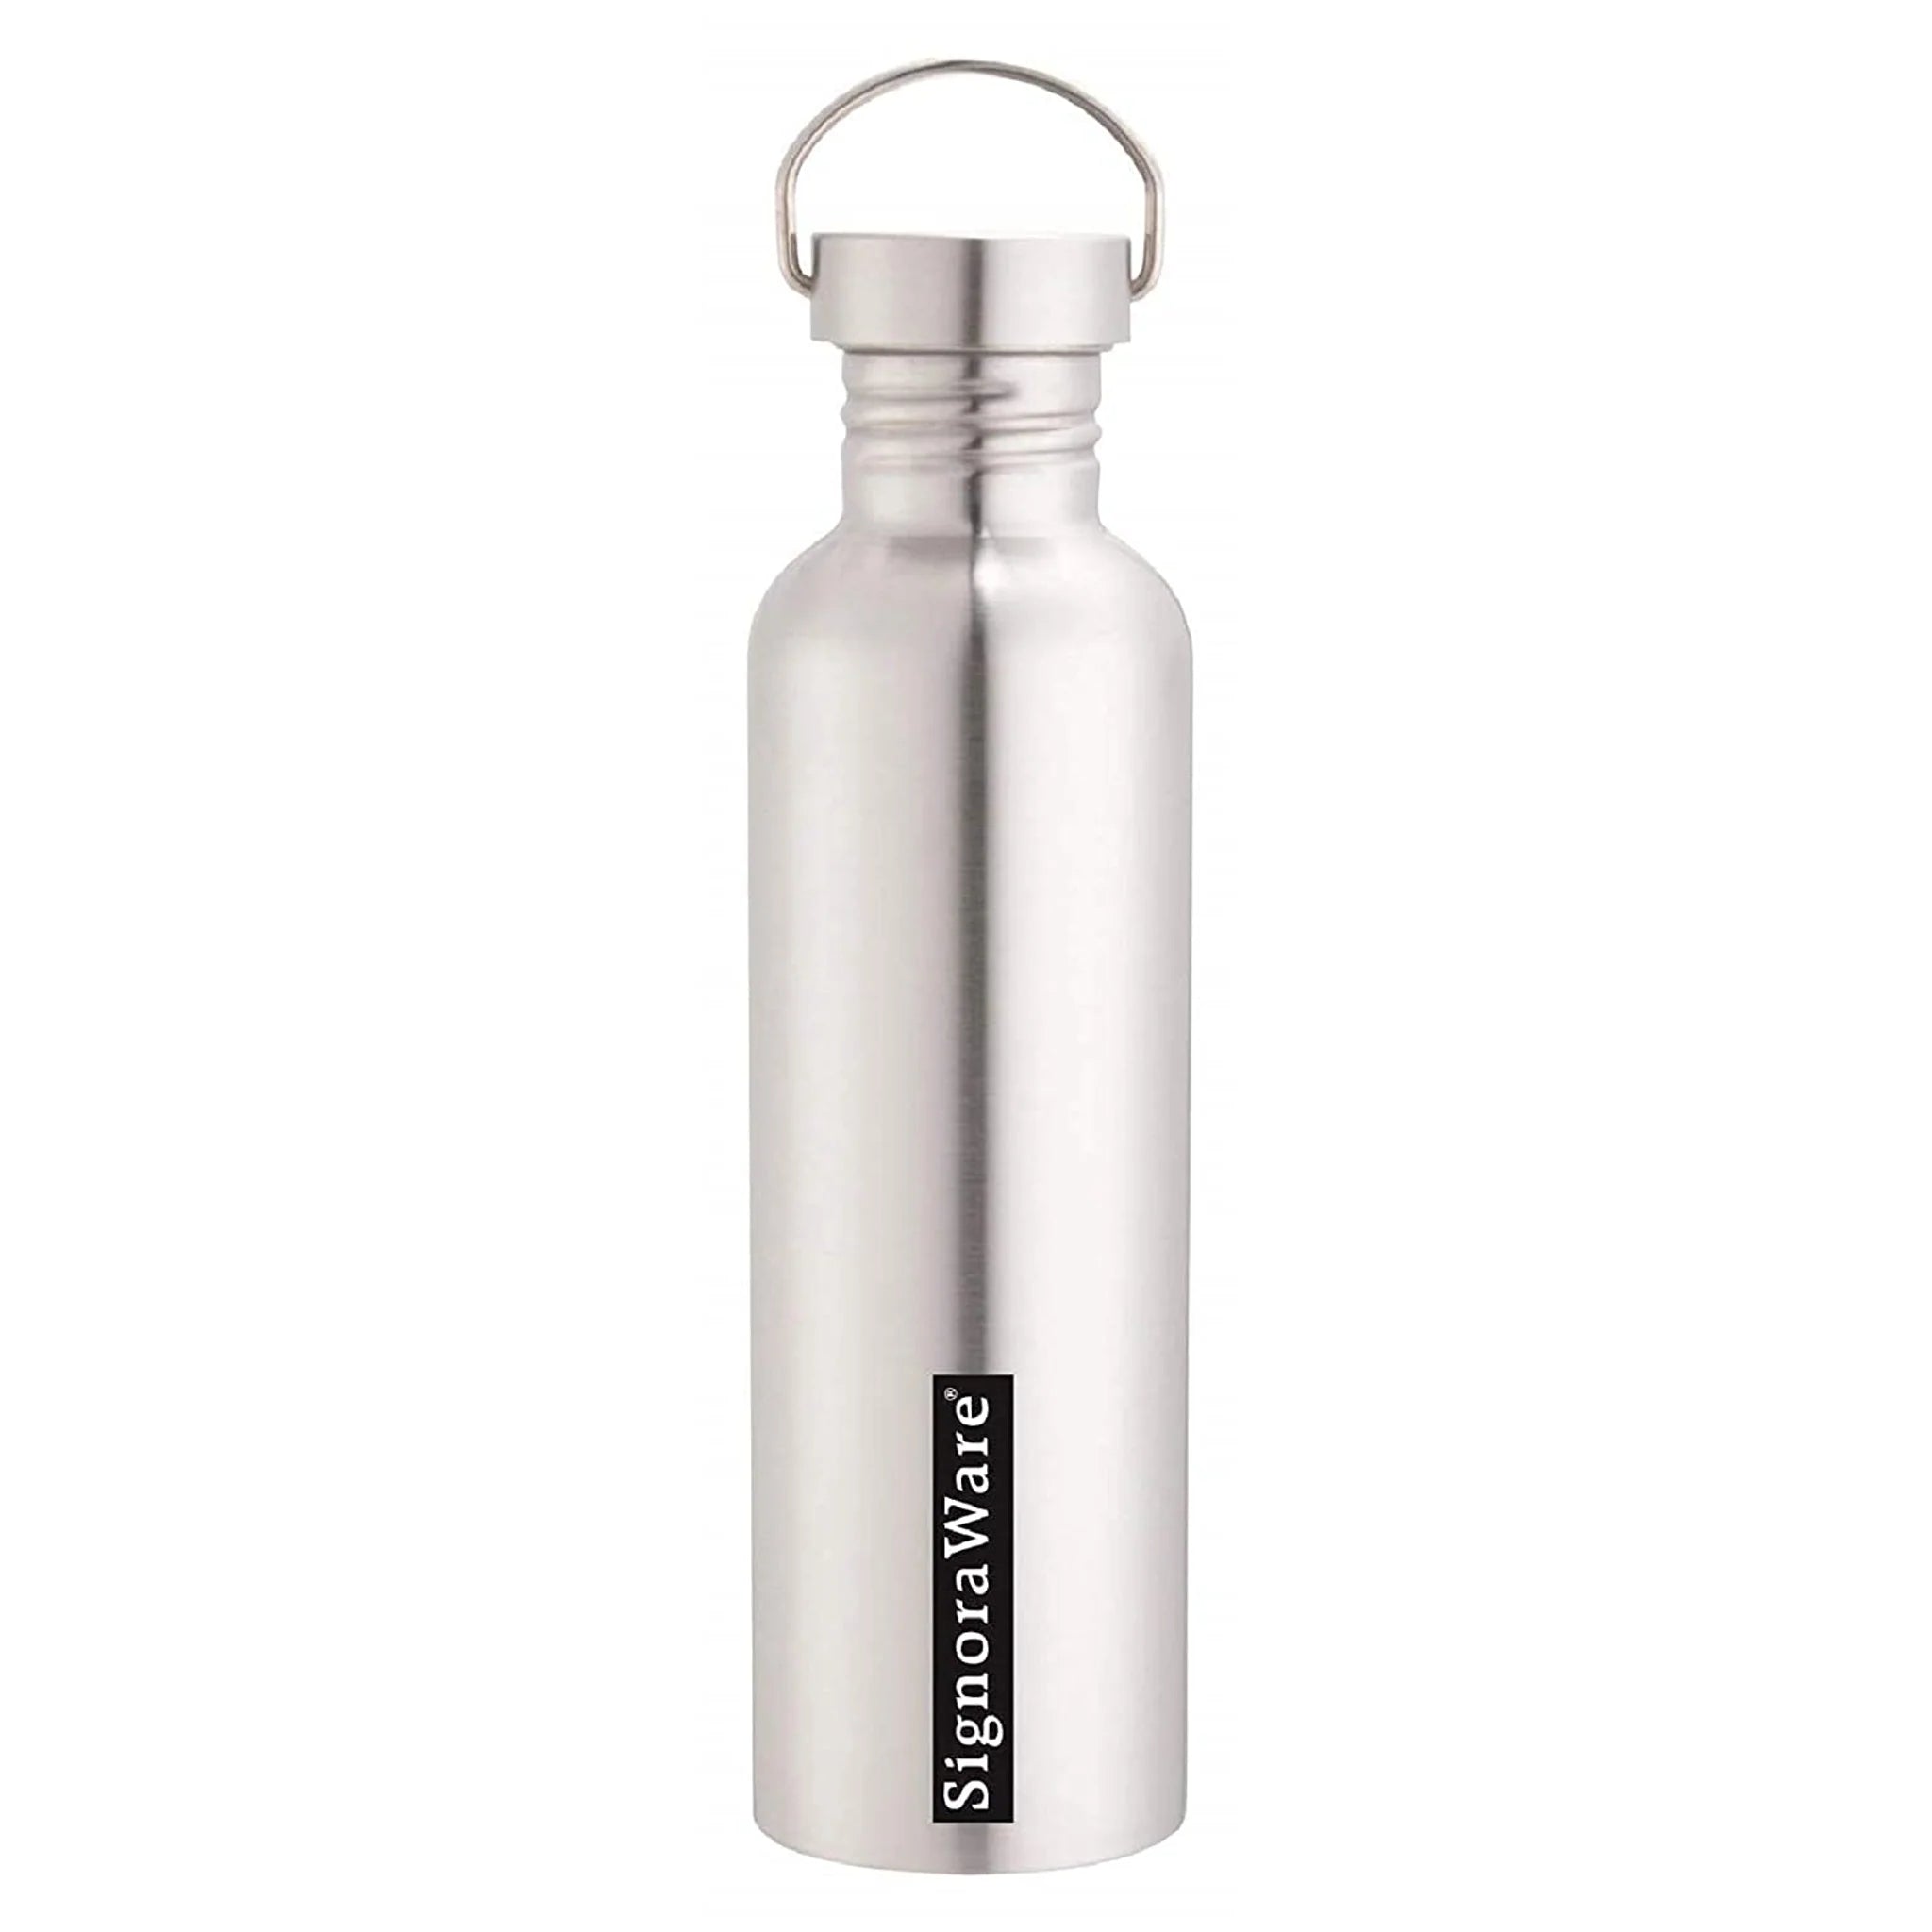 Signoraware Mac Steel Water Bottle 1 Ltr. - 3428